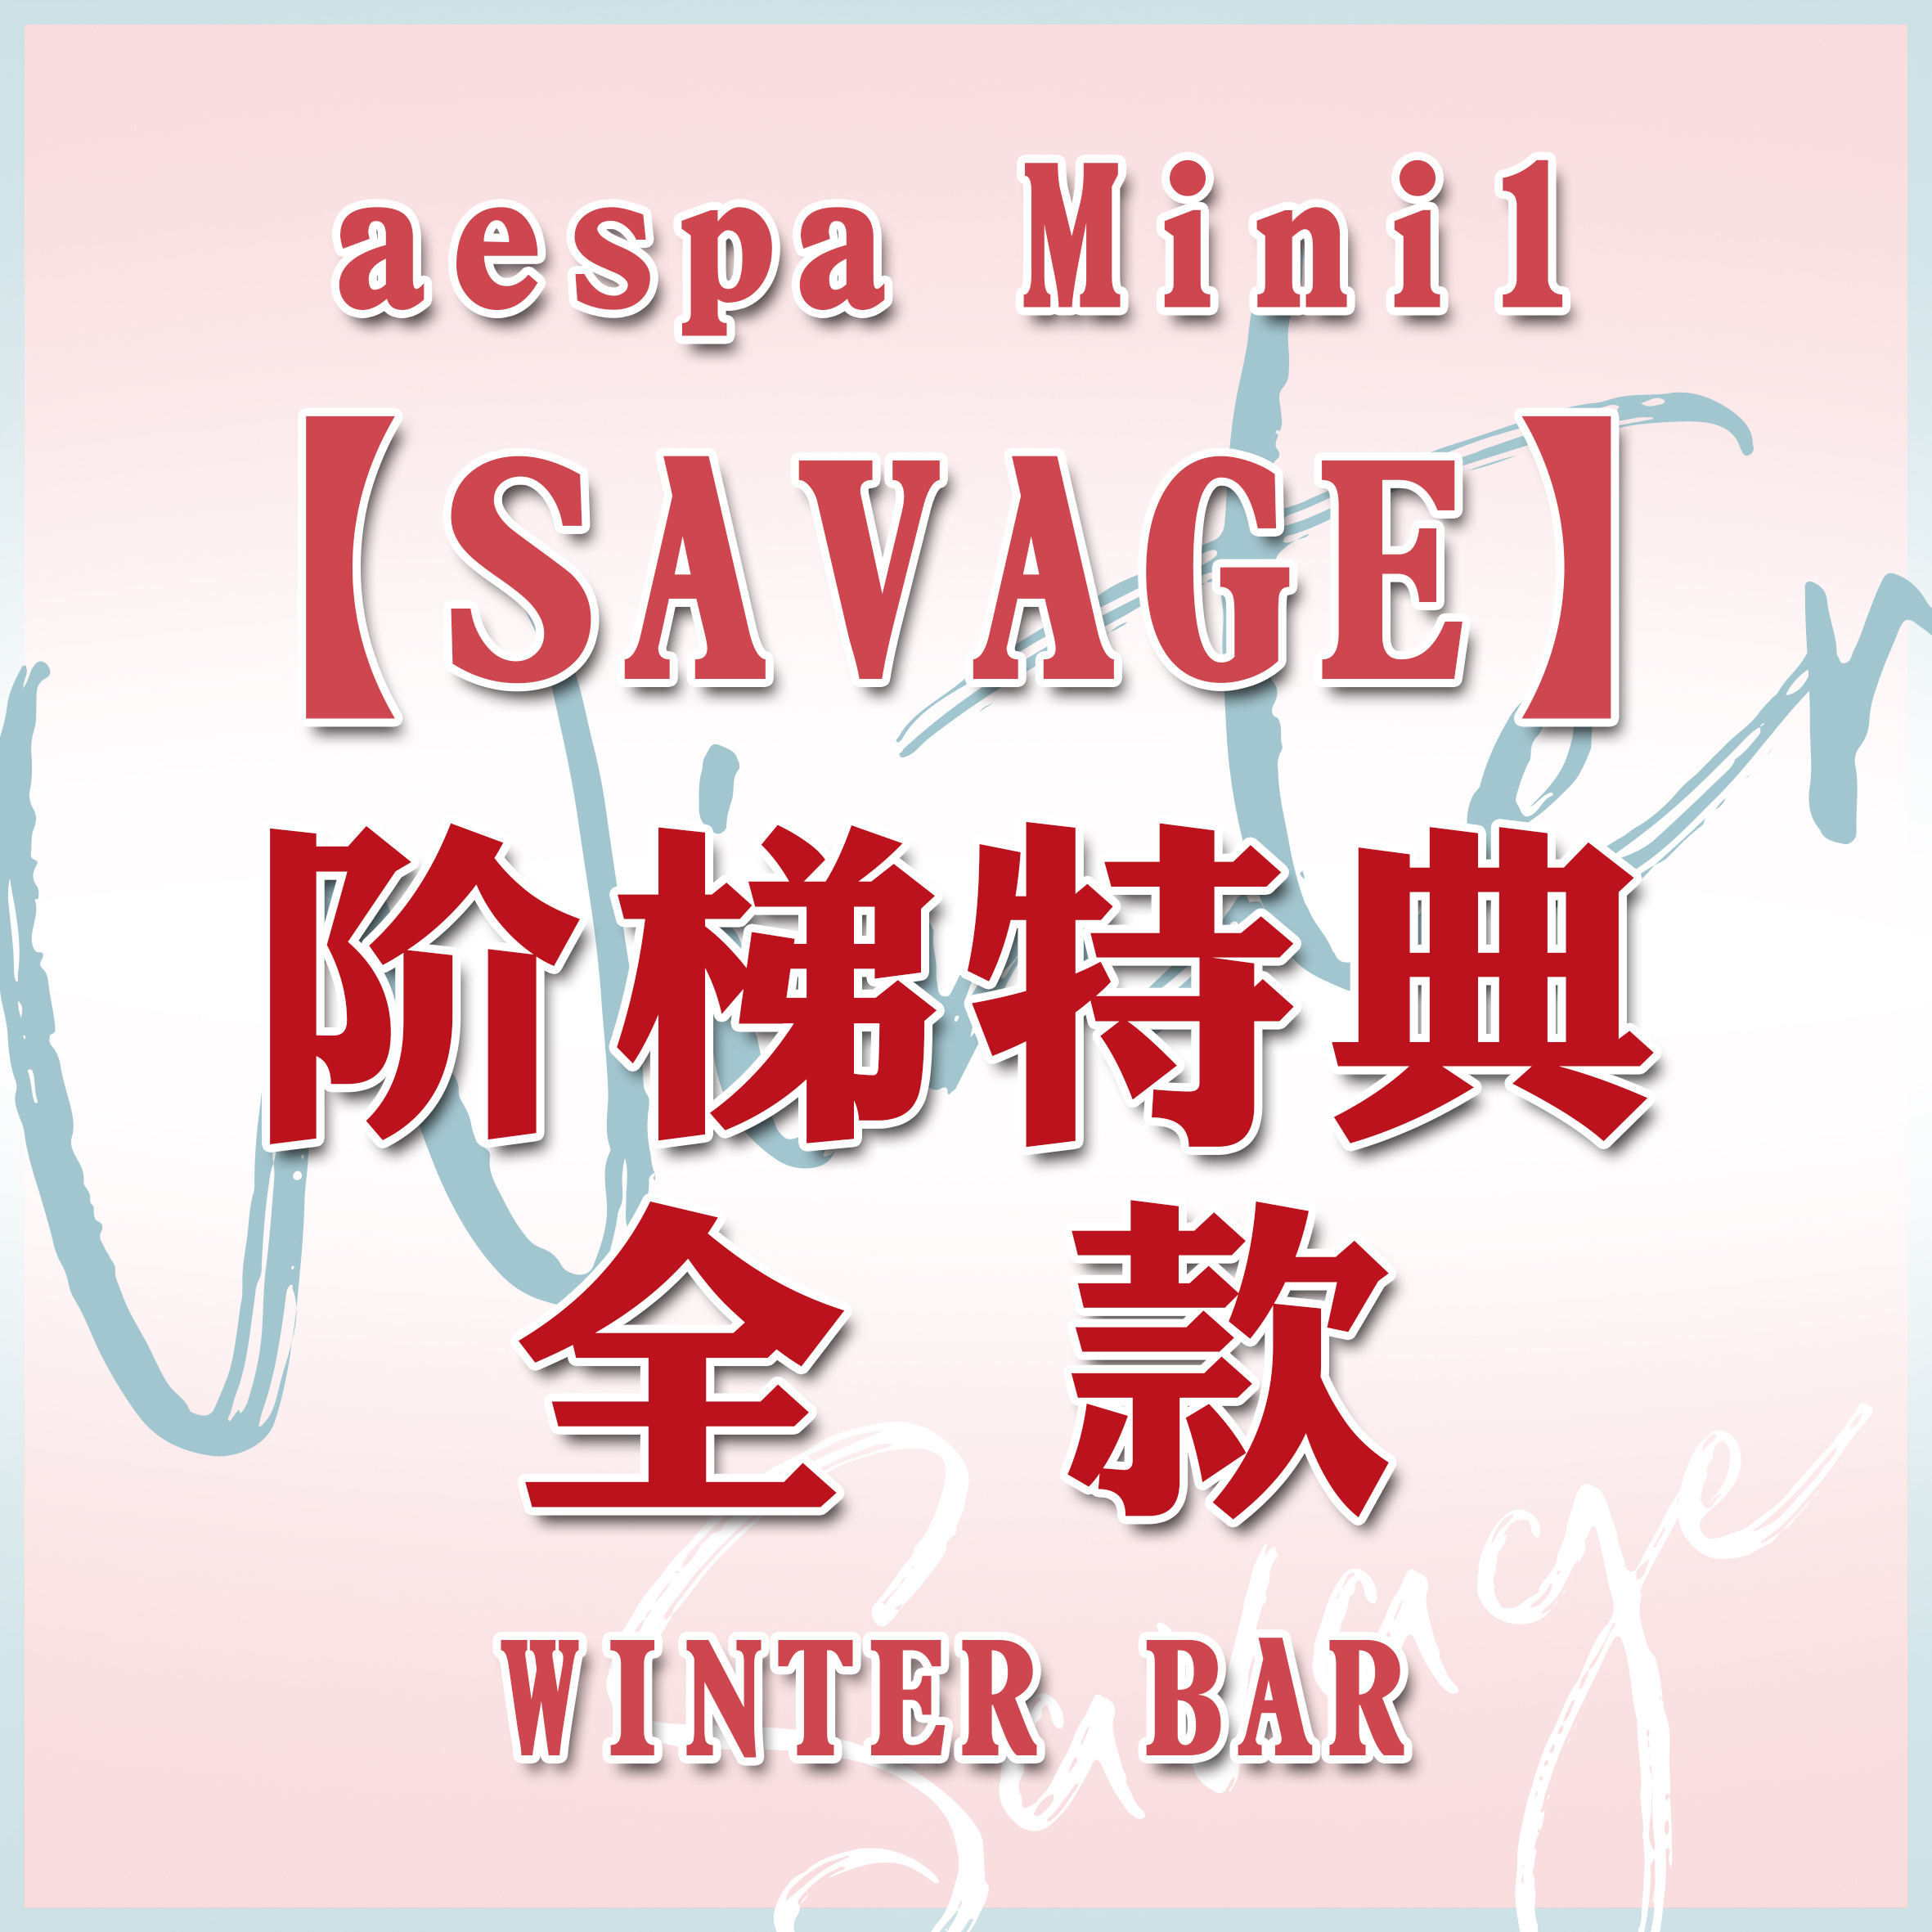 [全款 阶梯特典 特别批] aespa - 迷你专辑 Vol.1 [Savage] --金玟庭派_WinterParty